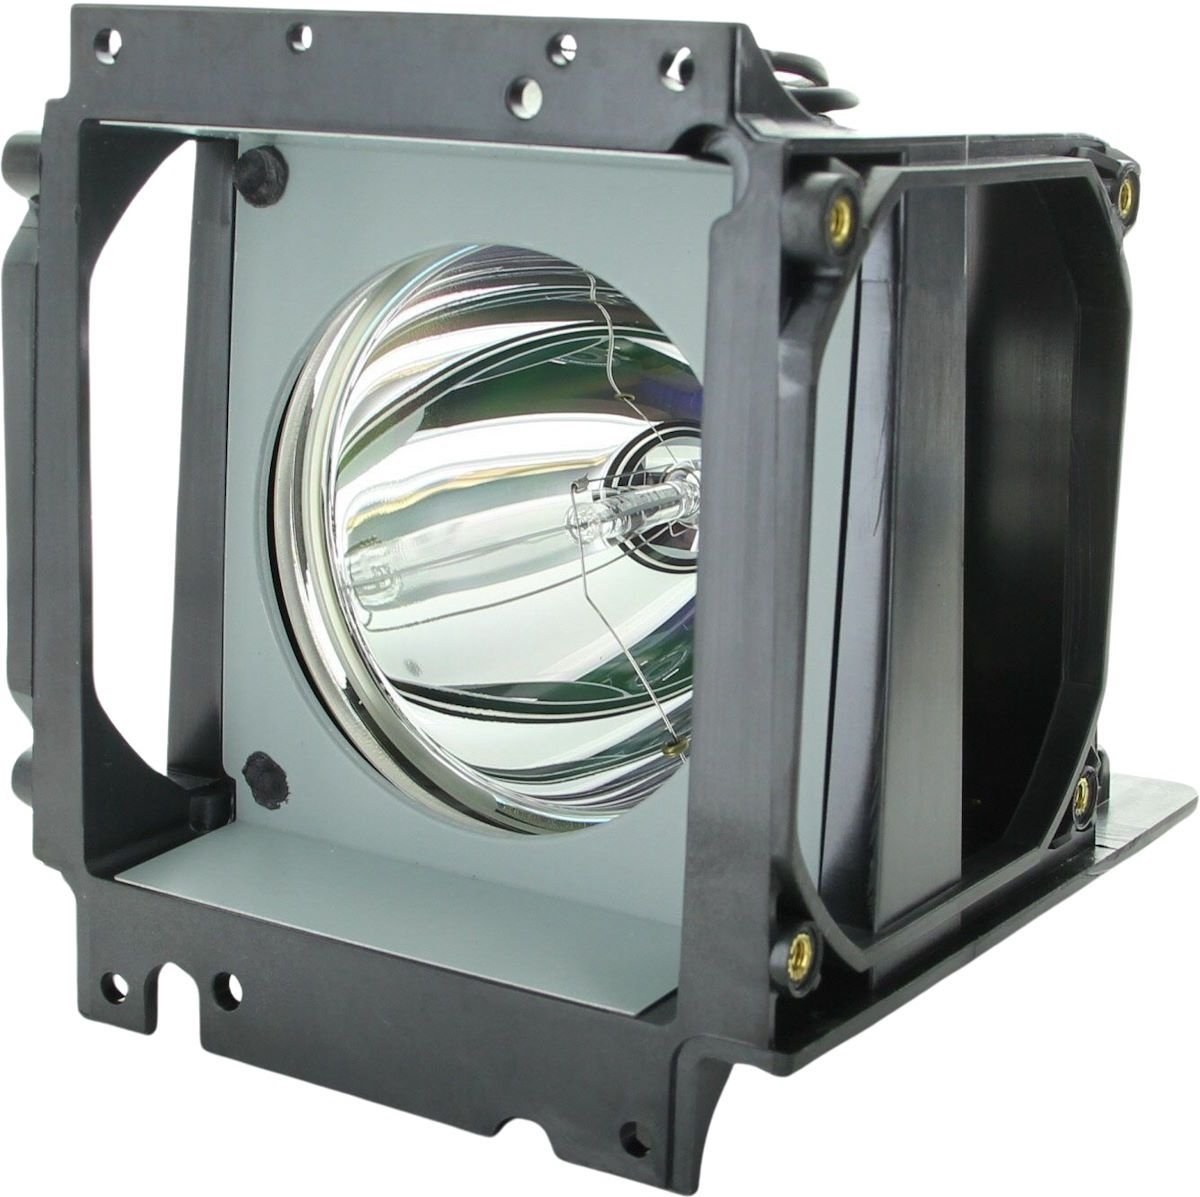 Beamerlamp geschikt voor de PLANAR Clarity c70SPwi beamer, lamp code 150-0142 / 151-0005 / 151-1063. Bevat originele P-VIP lamp, prestaties gelijk aan origineel.